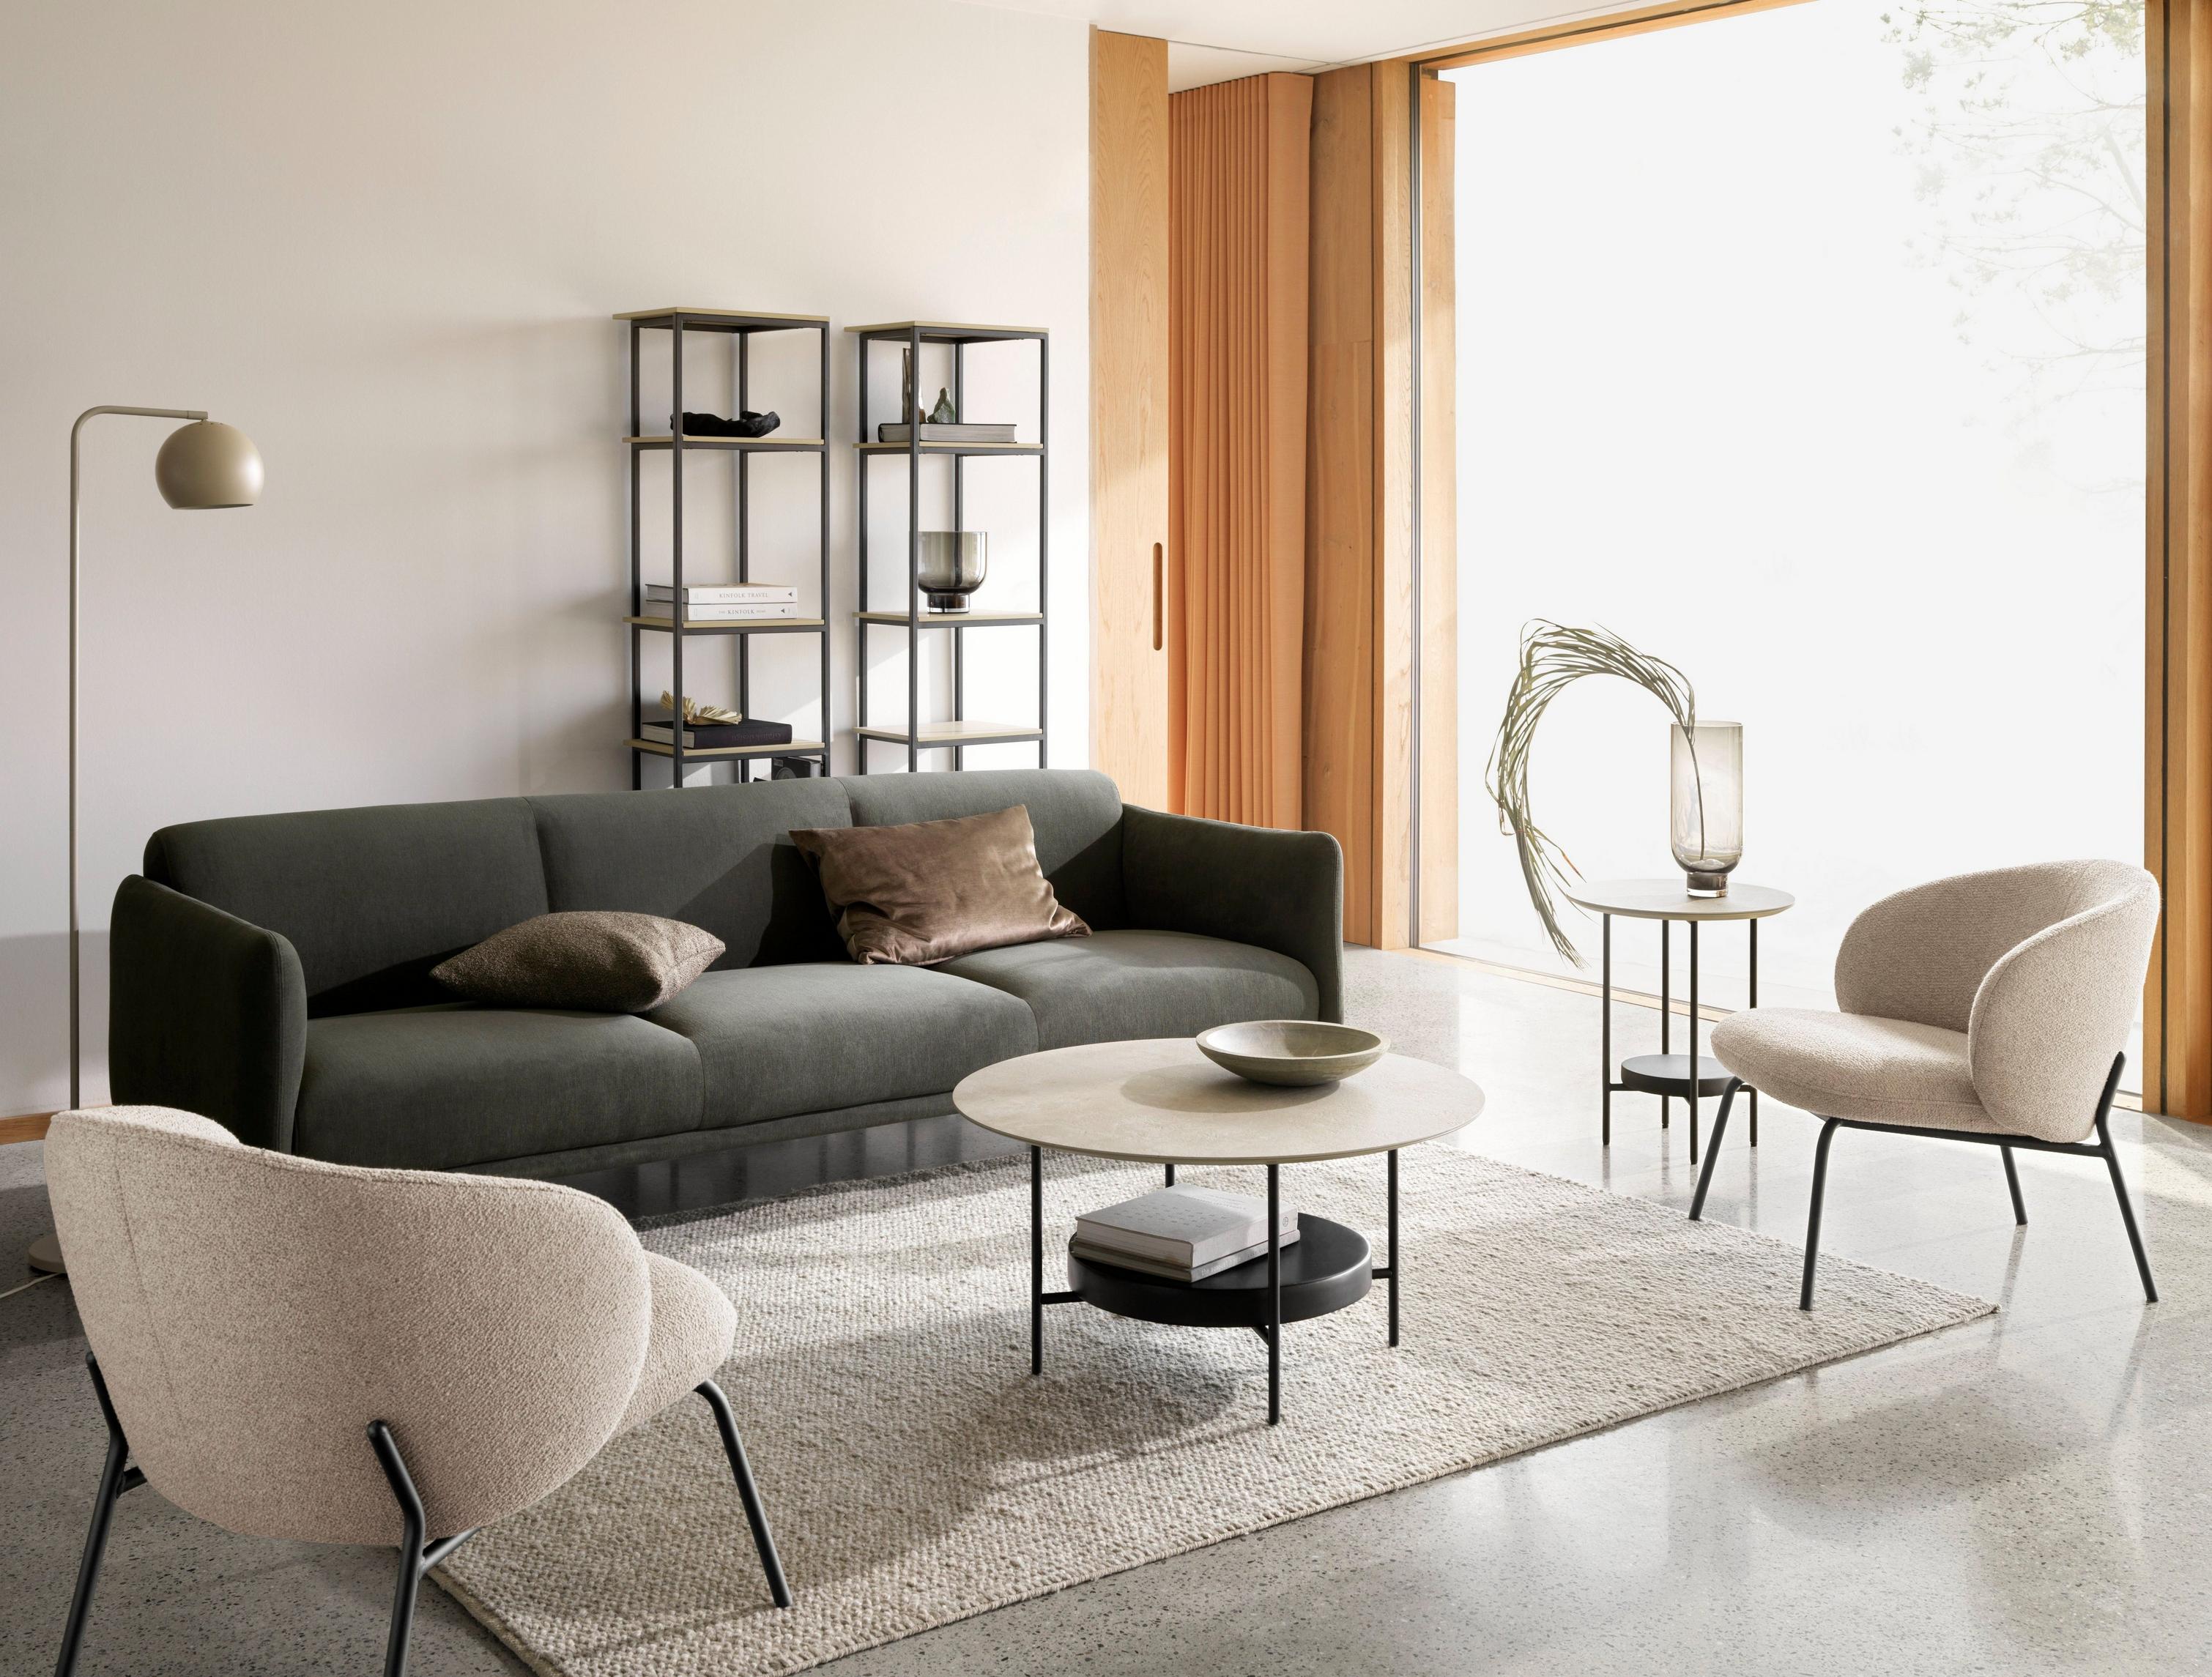 3-osobowa sofa Berne tapicerowana ciemnozieloną tkaniną Frisco, stolik kawowy Madrid i fotel Princeton w beżowej tkaninie Lazio.